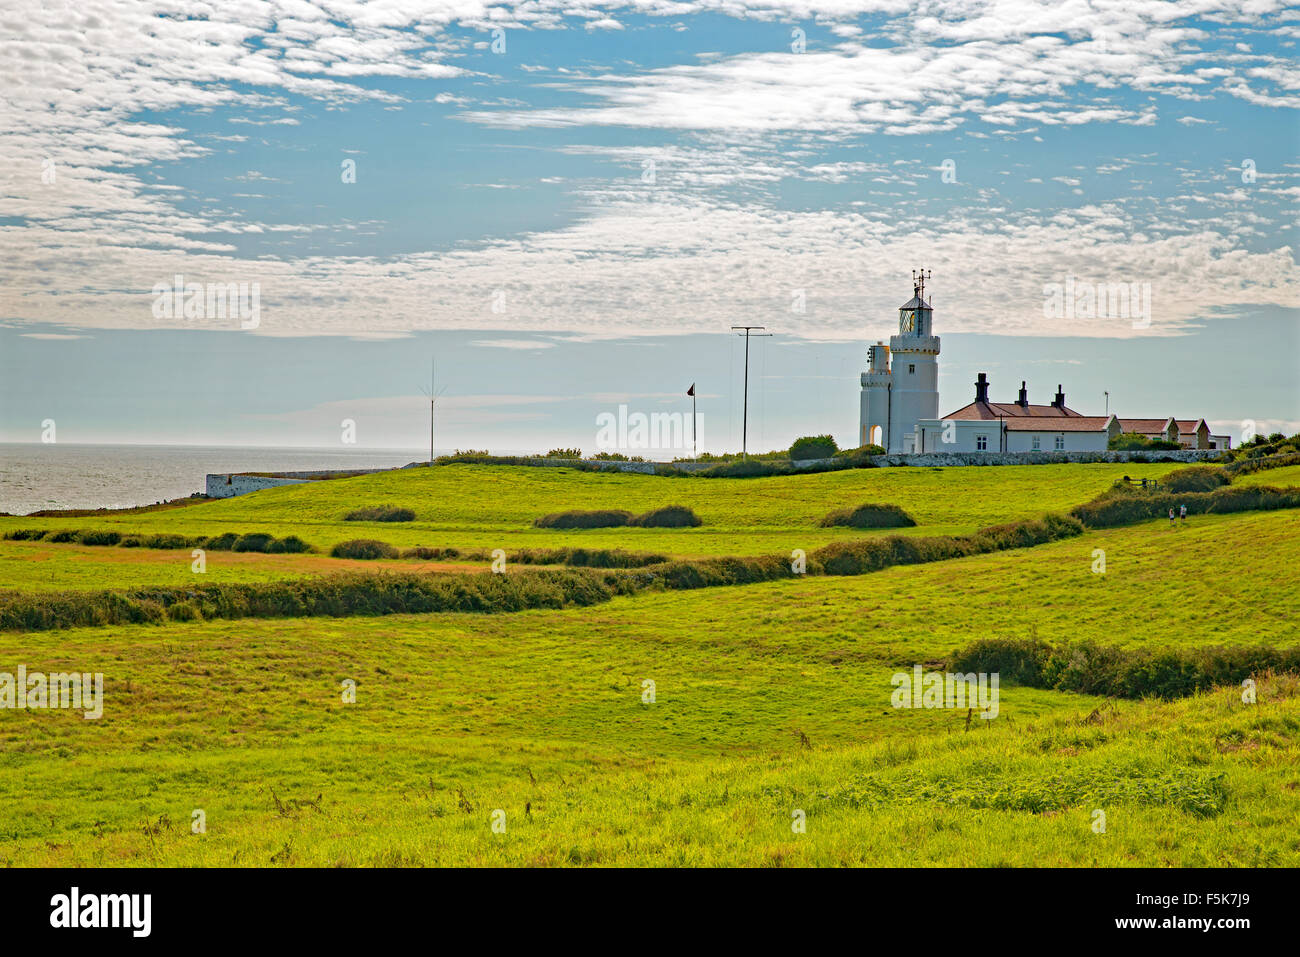 St. Catherine's lighthouse Isle of Wight UK Stock Photo